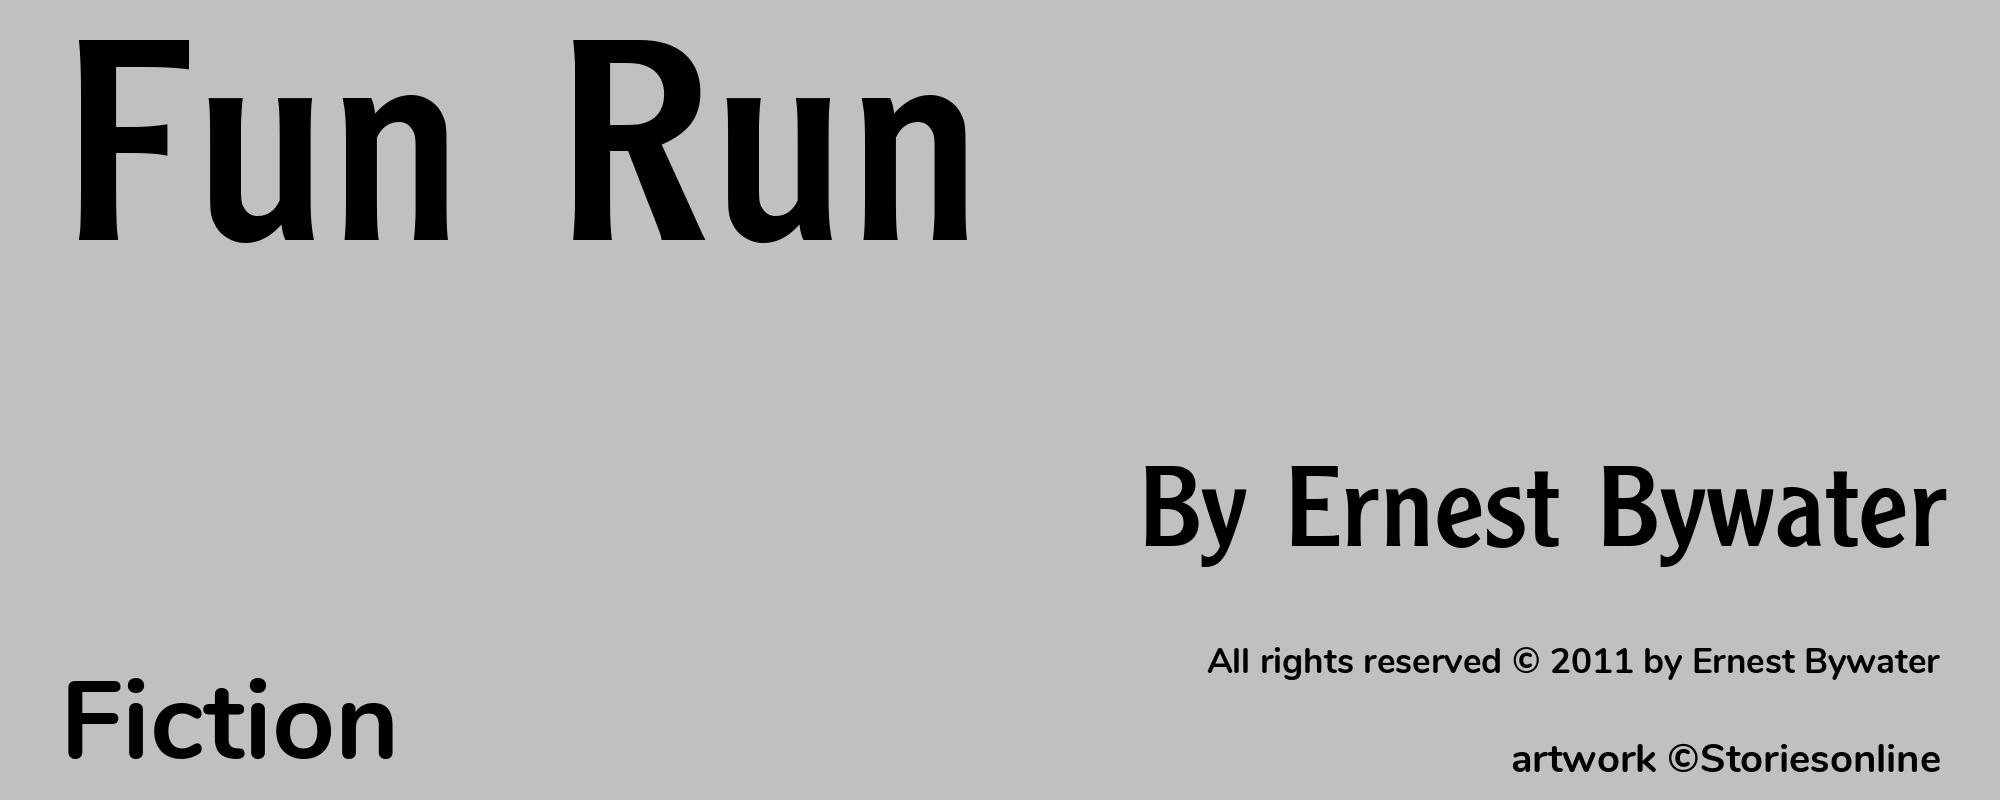 Fun Run - Cover